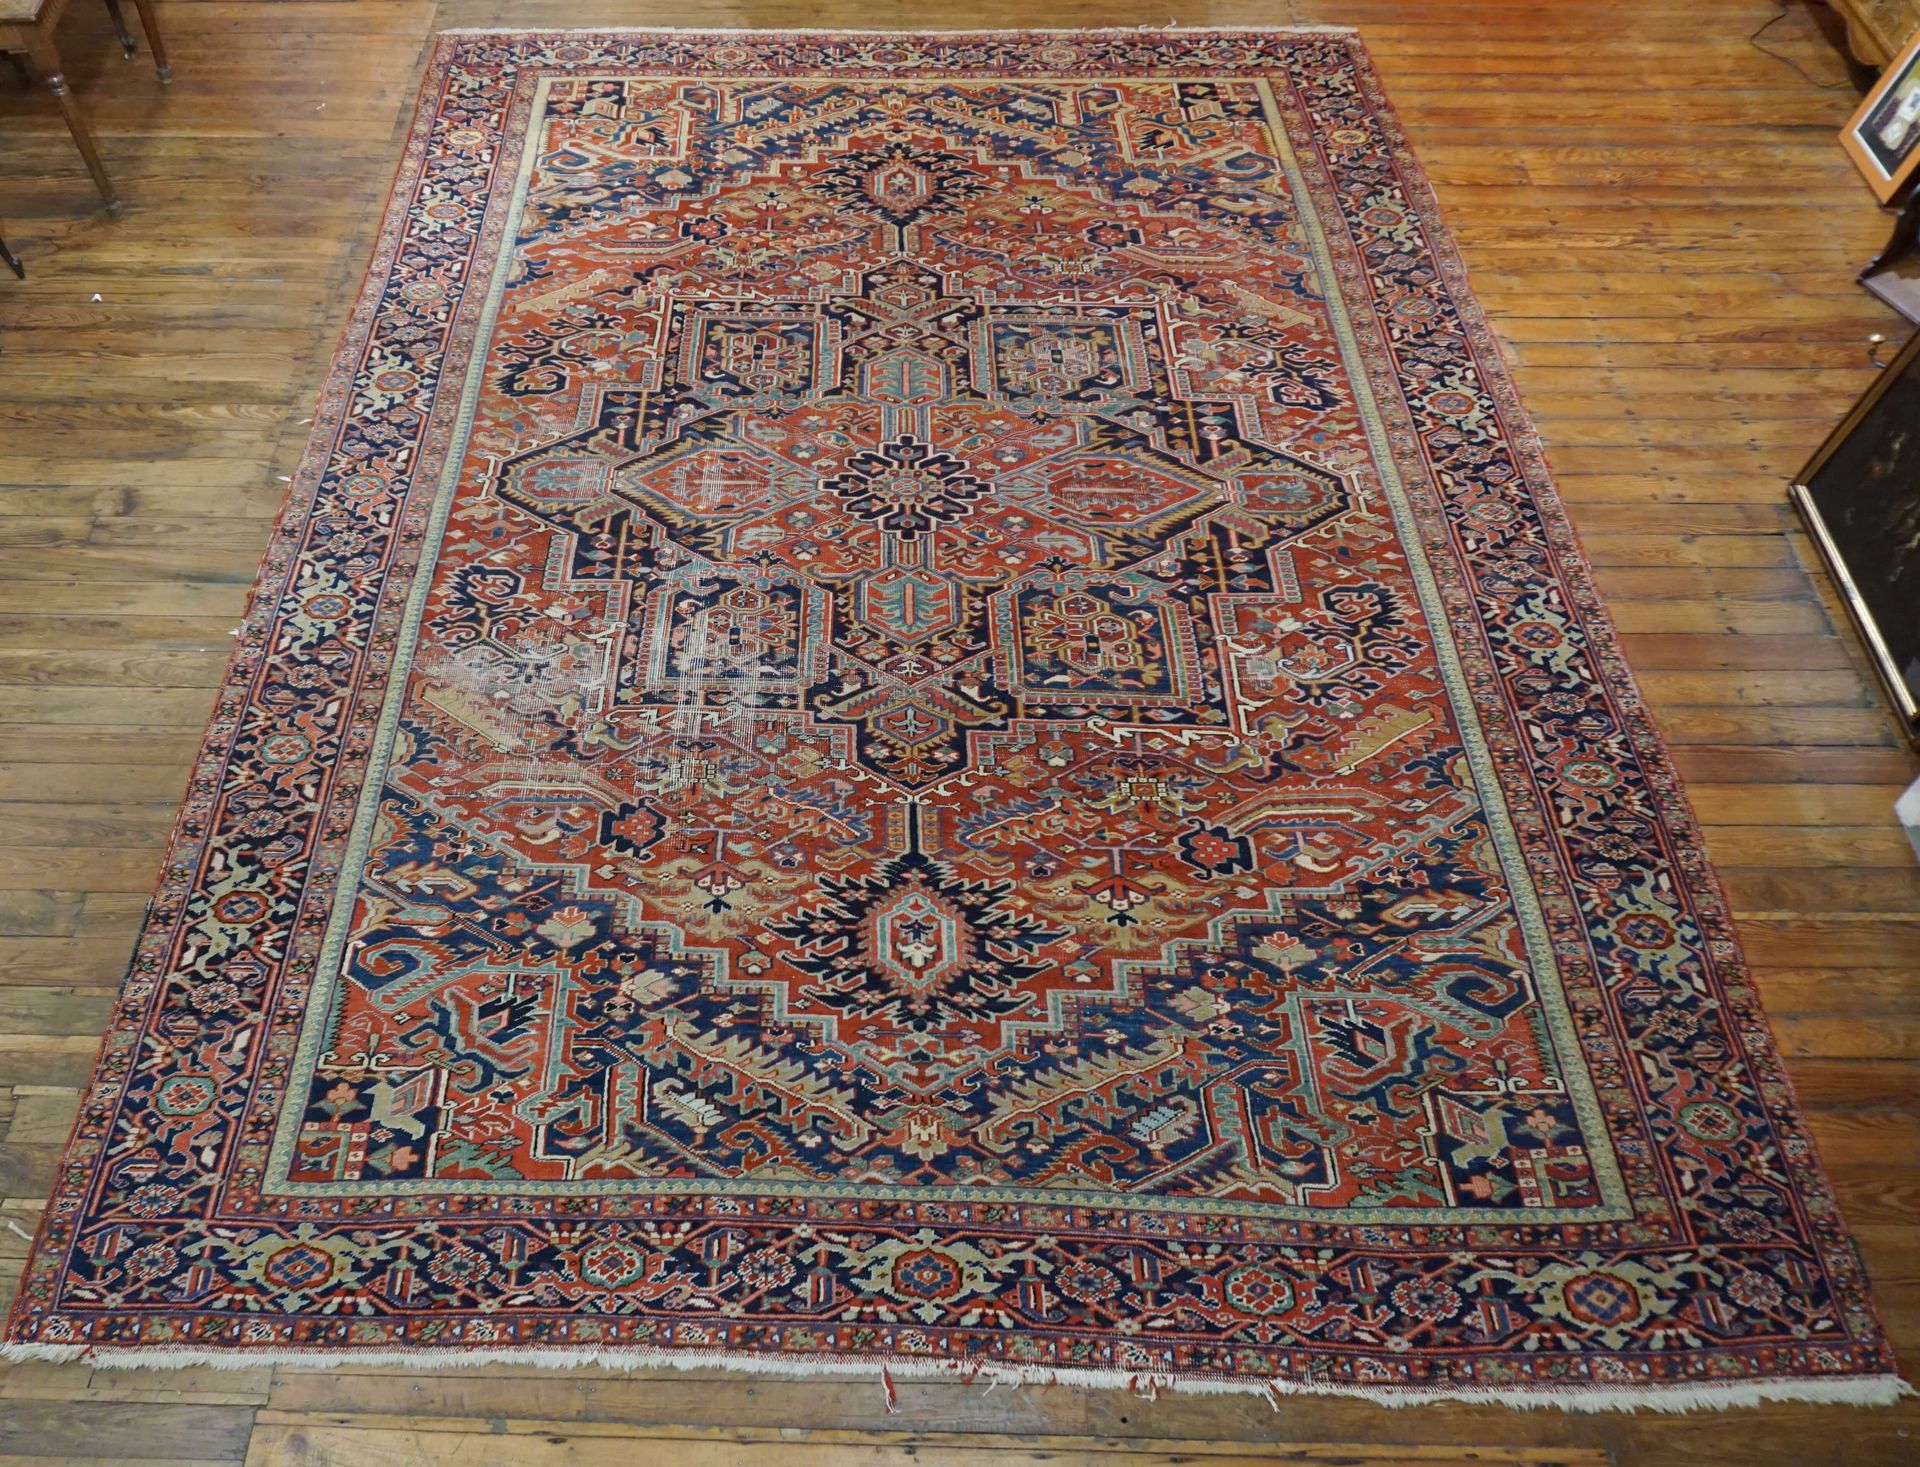 Null Heriz carpet. Worn. 335 cm x 473 cm